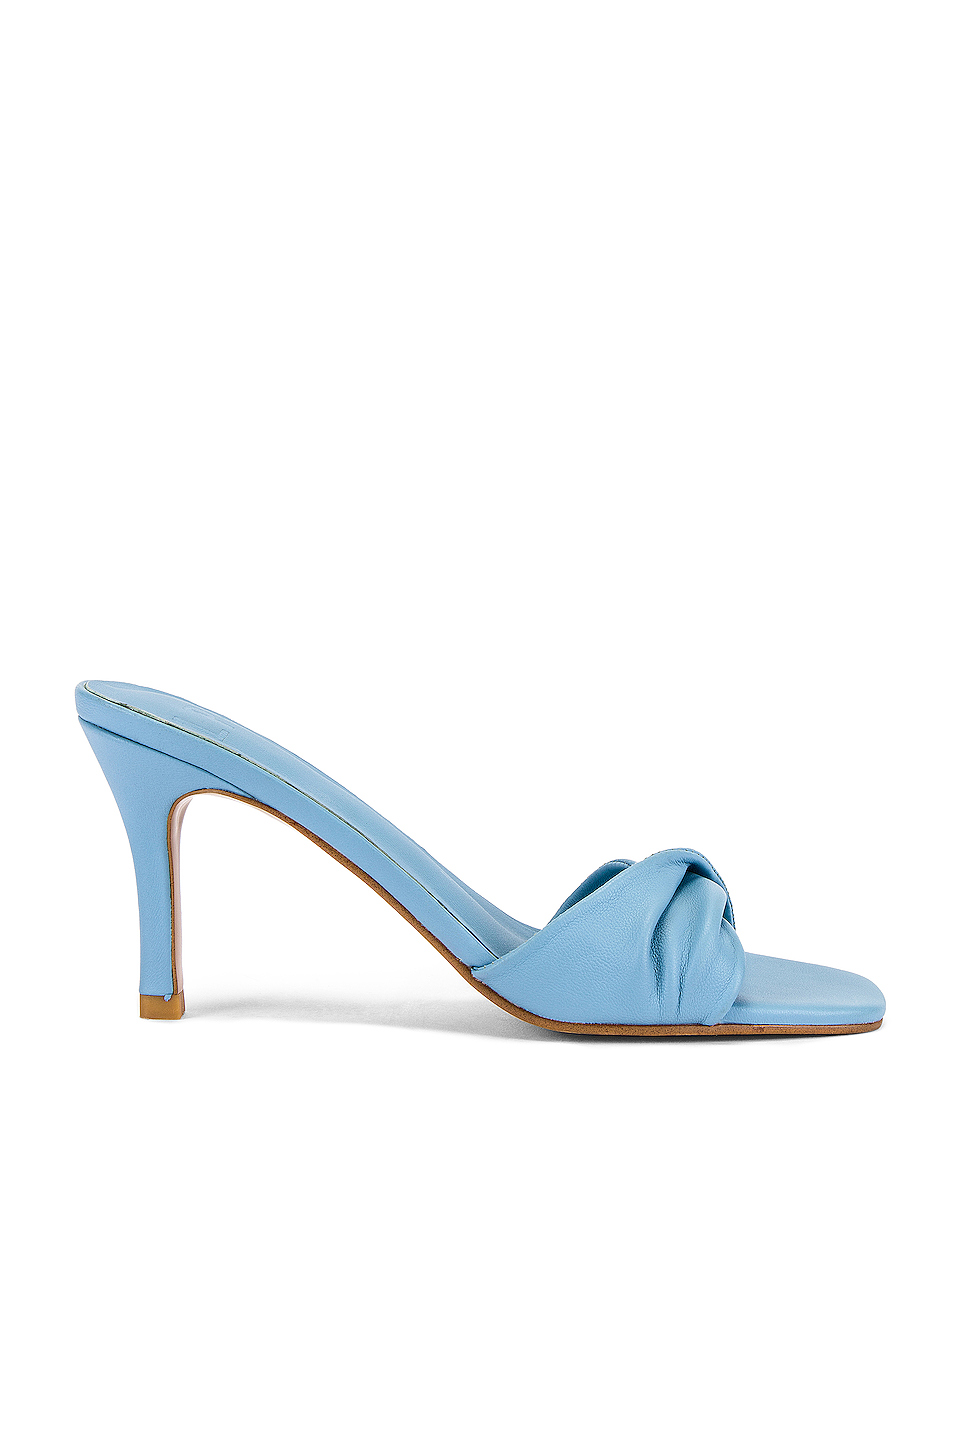 aqua colored heels